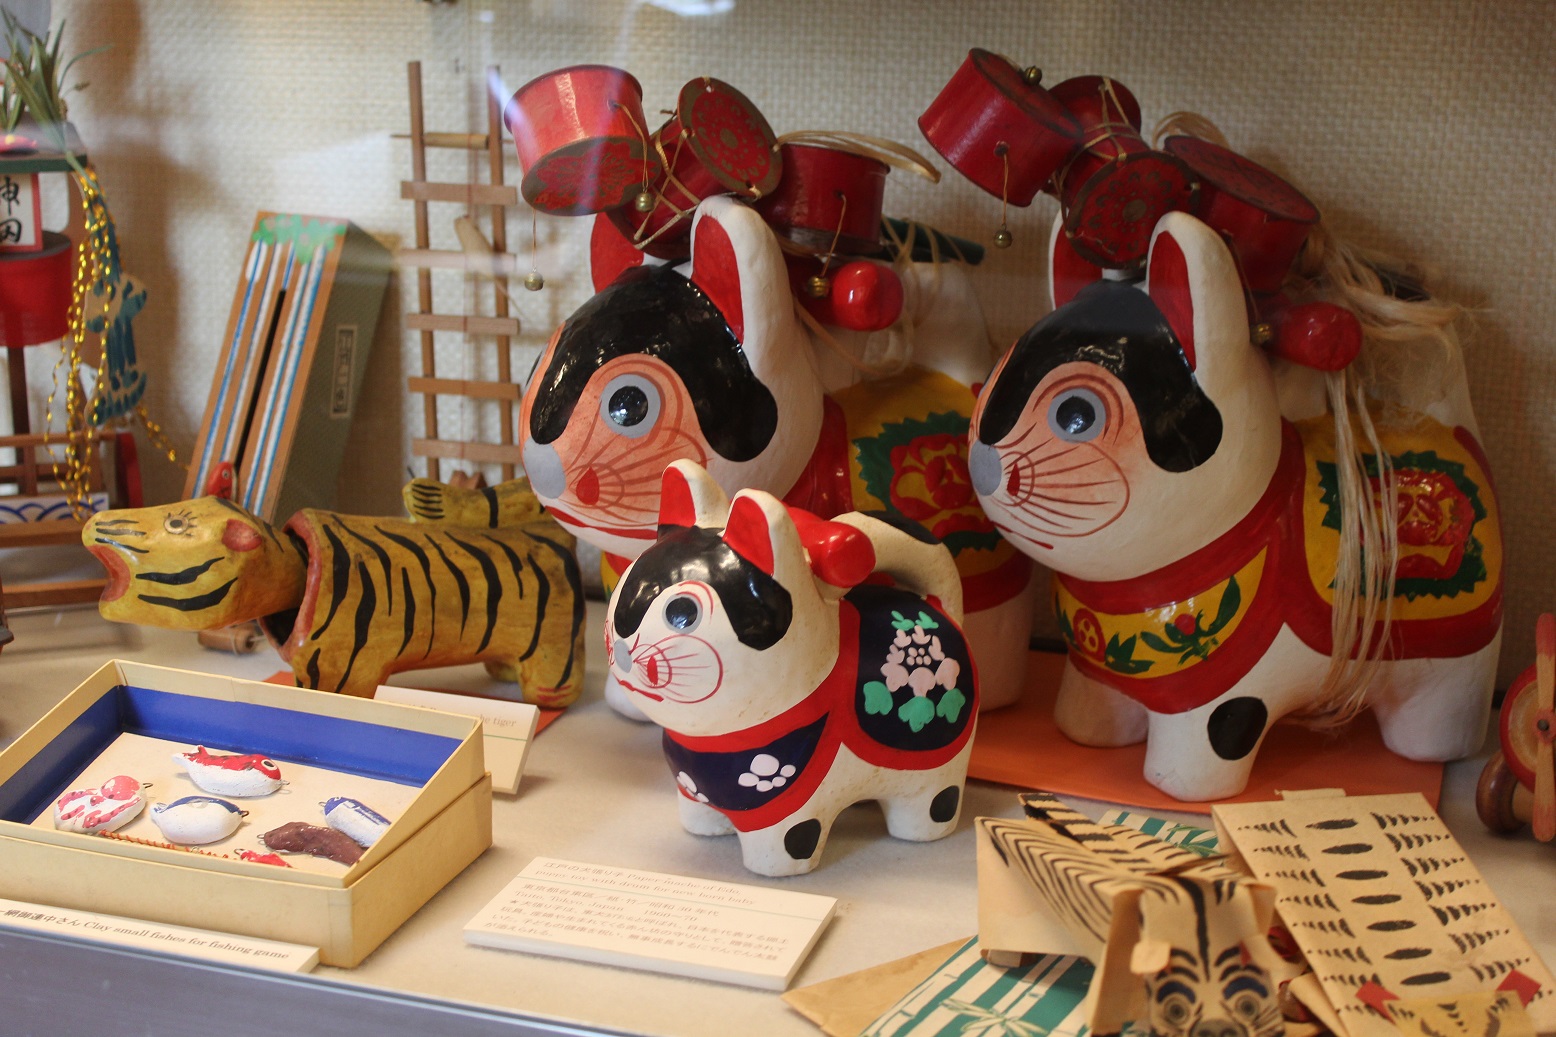 岩戸張子 おかめだるま 郷土玩具 千葉県 民芸 伝統工芸 風俗人形 置物 